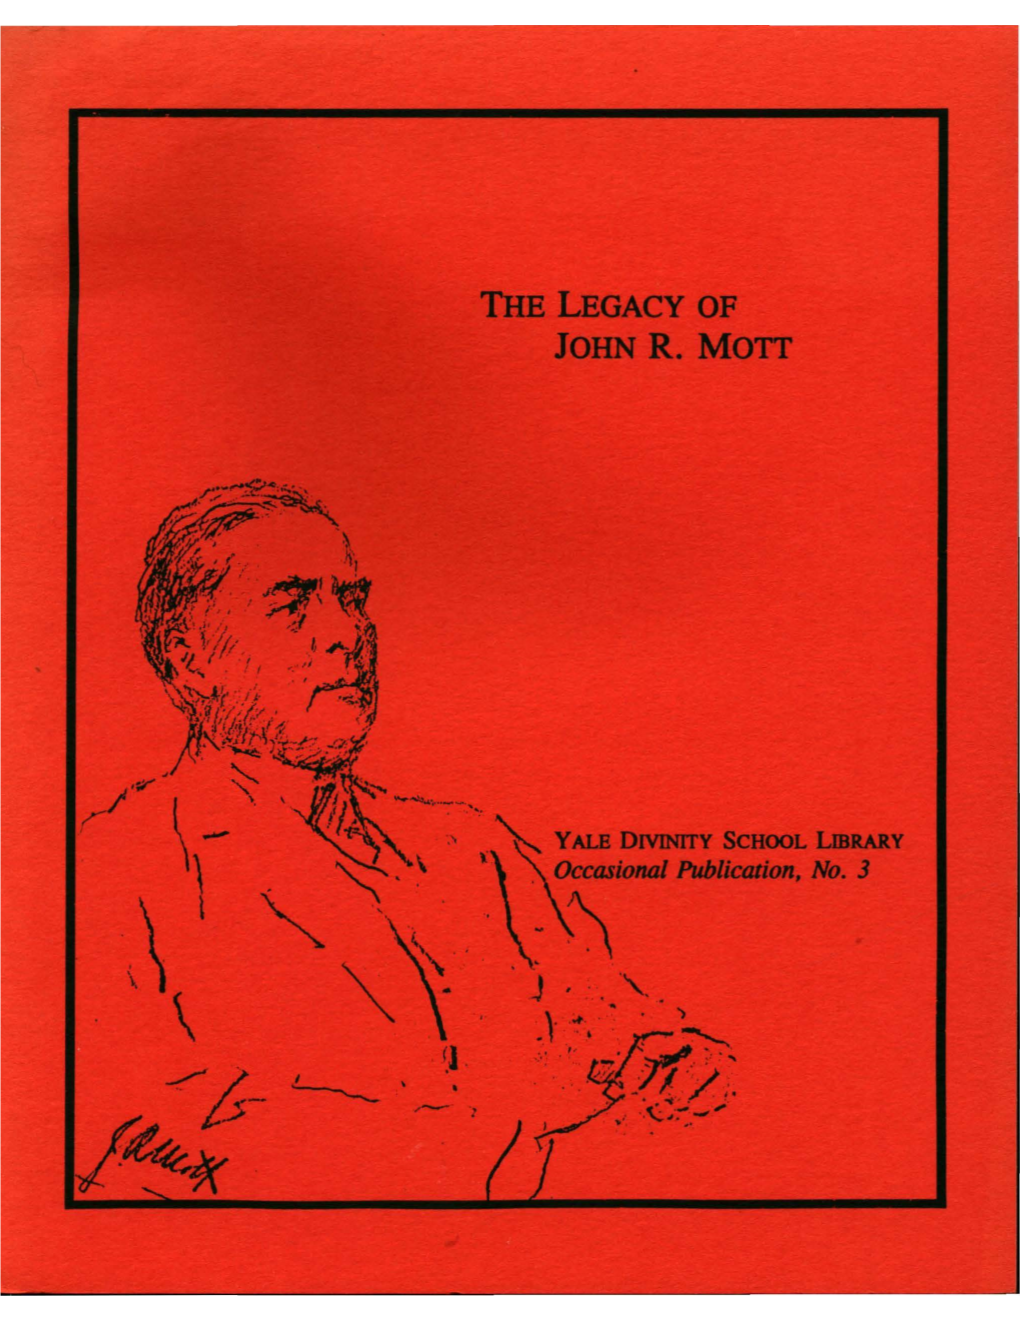 The Legacy of John R. Mott